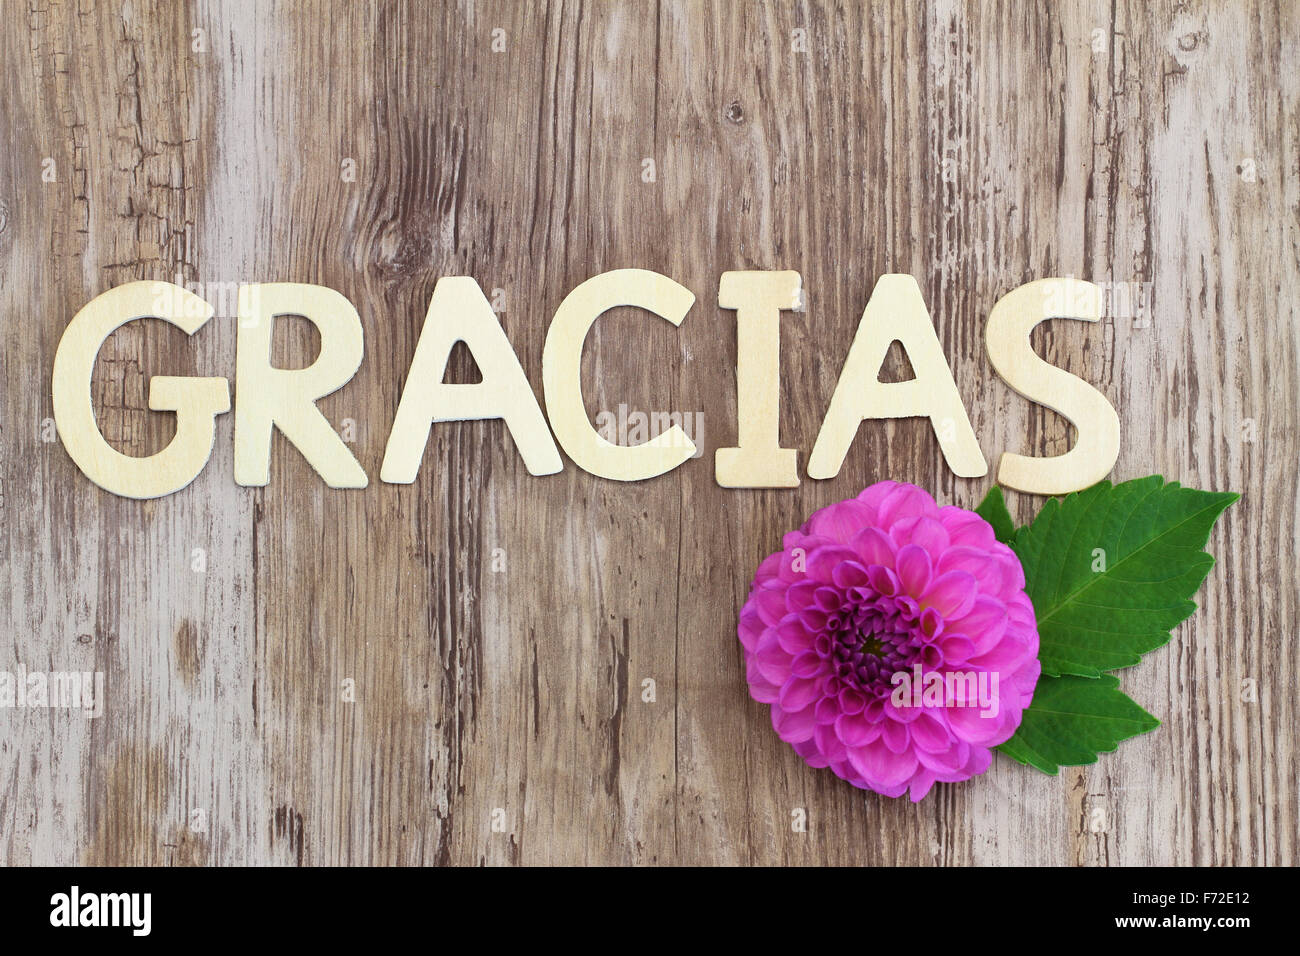 Gracias (ce qui signifie merci en espagnol) écrit avec des lettres en bois et rose fleur dahlia Banque D'Images